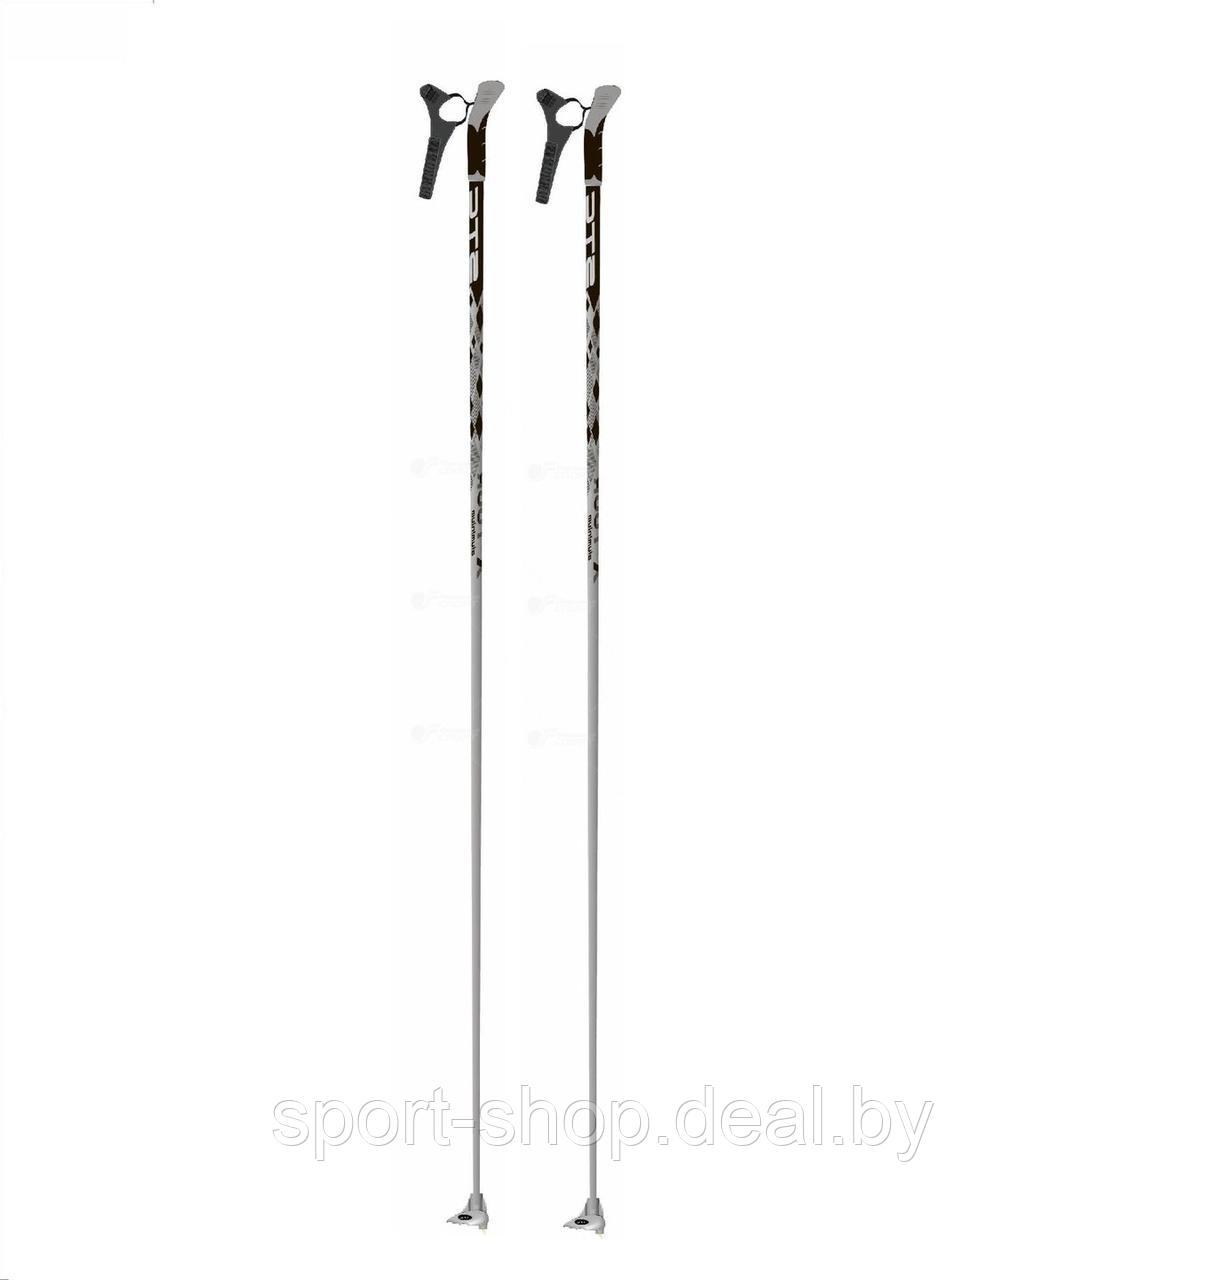 Палки лыжные STC X-TOUR алюминиевые,палки лыжные,лыжные палки stc,лыжные палки по росту,размер лыжных палок